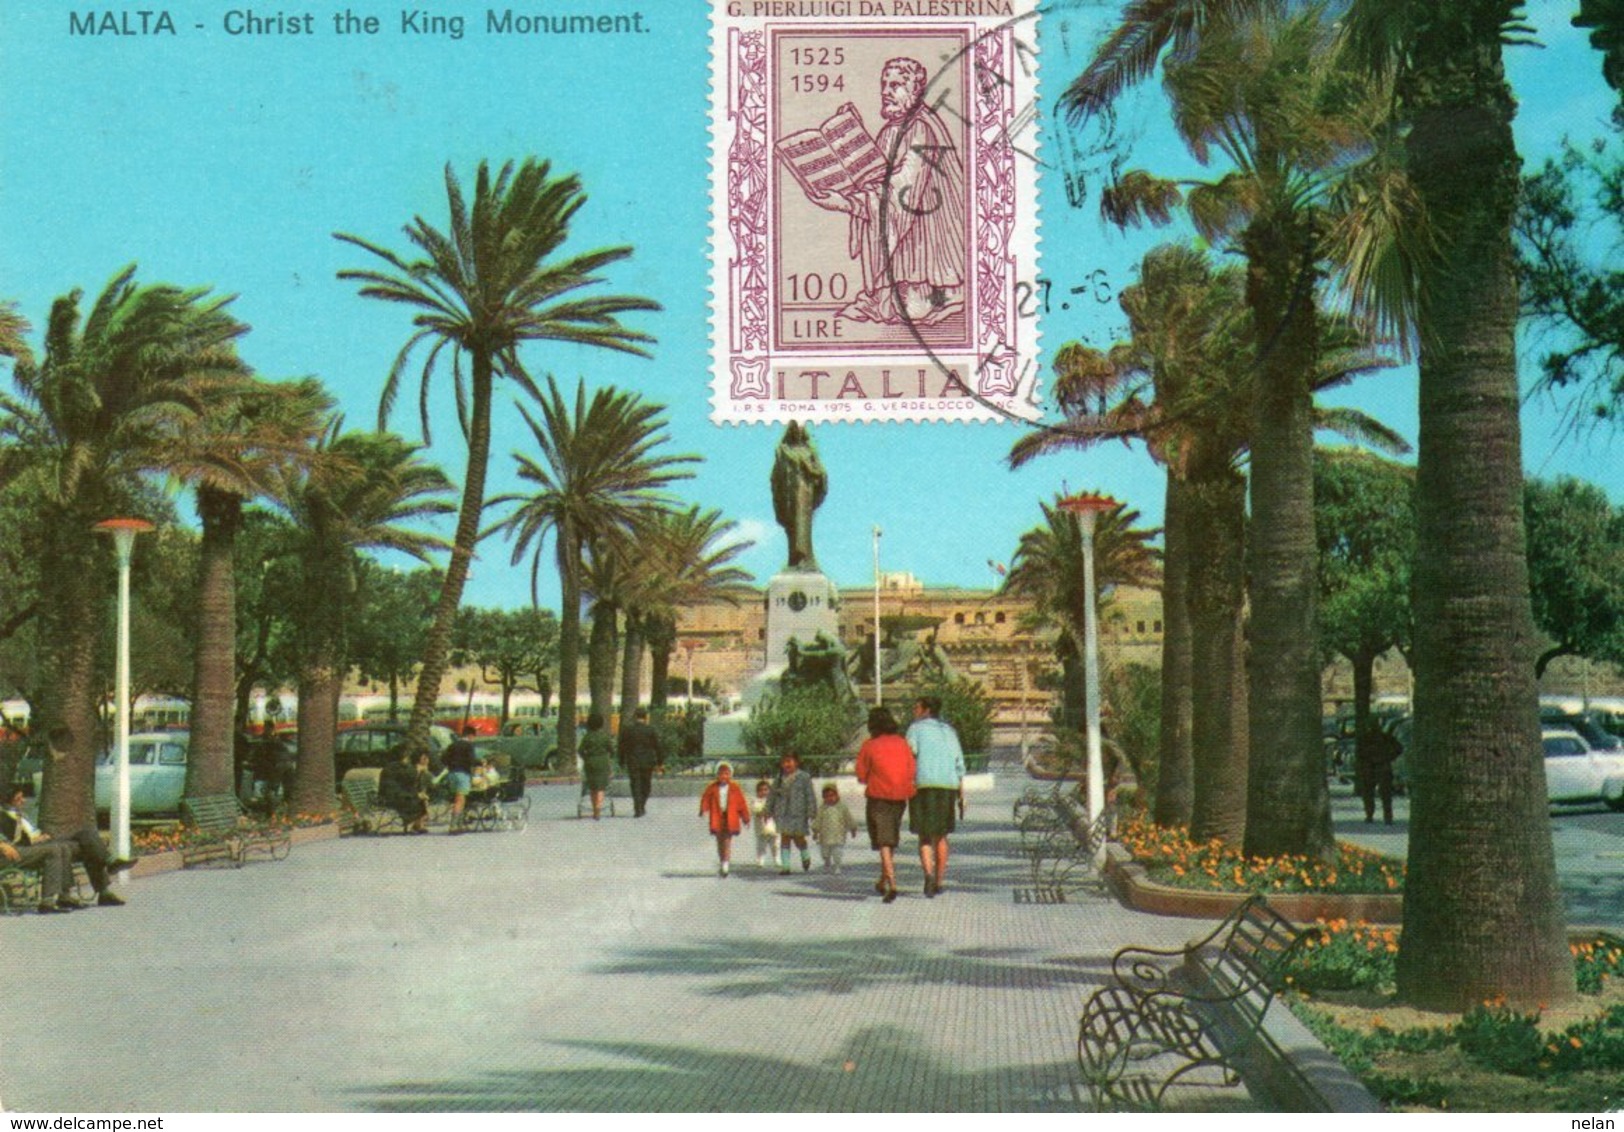 MALTA-CATANIA C. P. FILATELICO 1975-F.G. - Malta